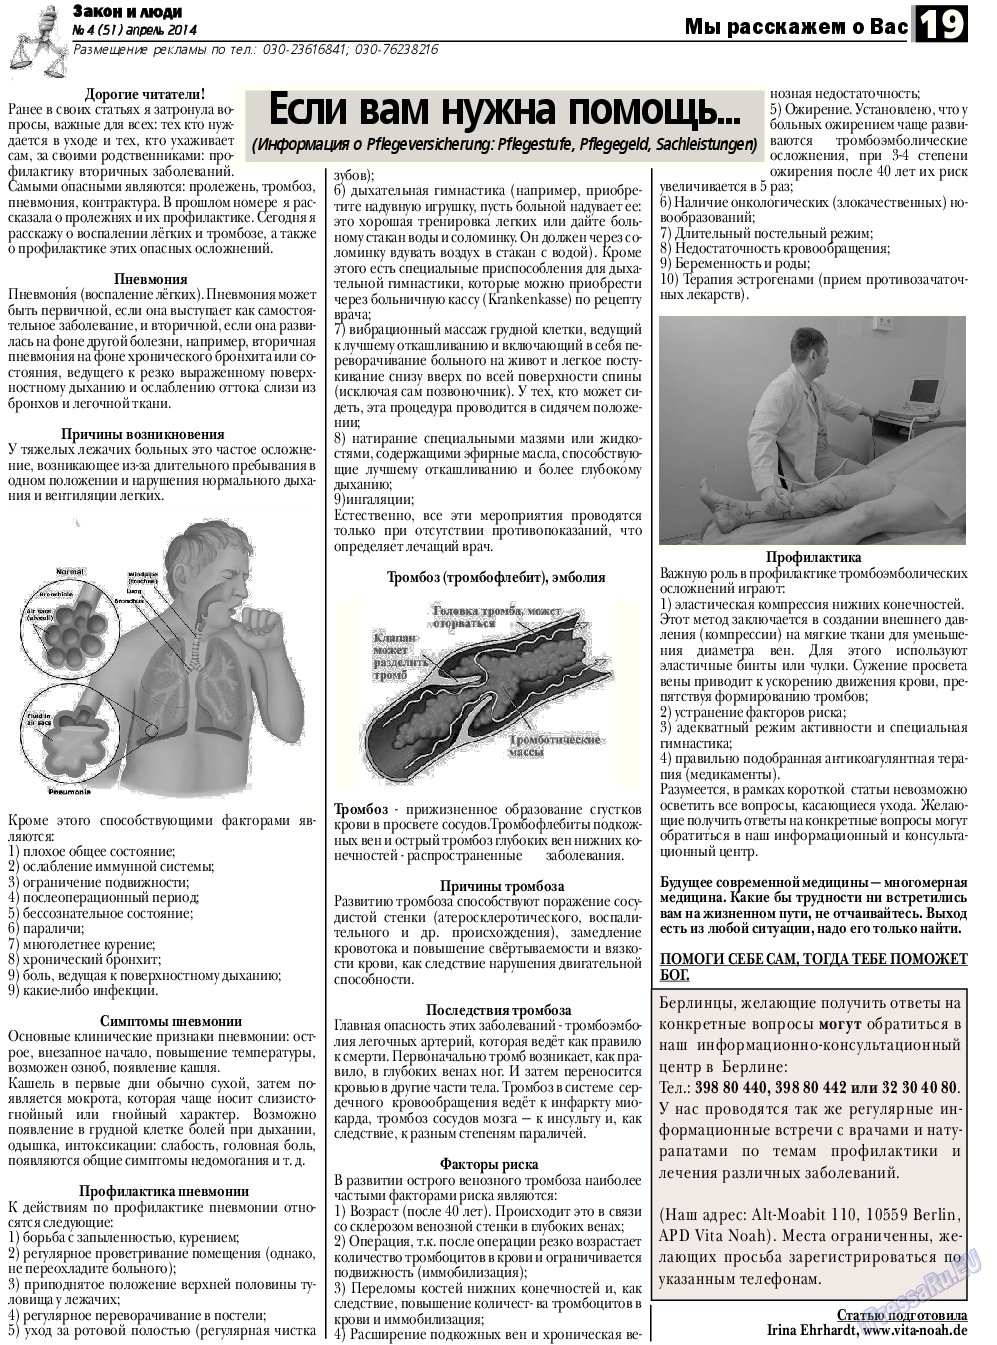 Закон и люди, газета. 2014 №4 стр.19